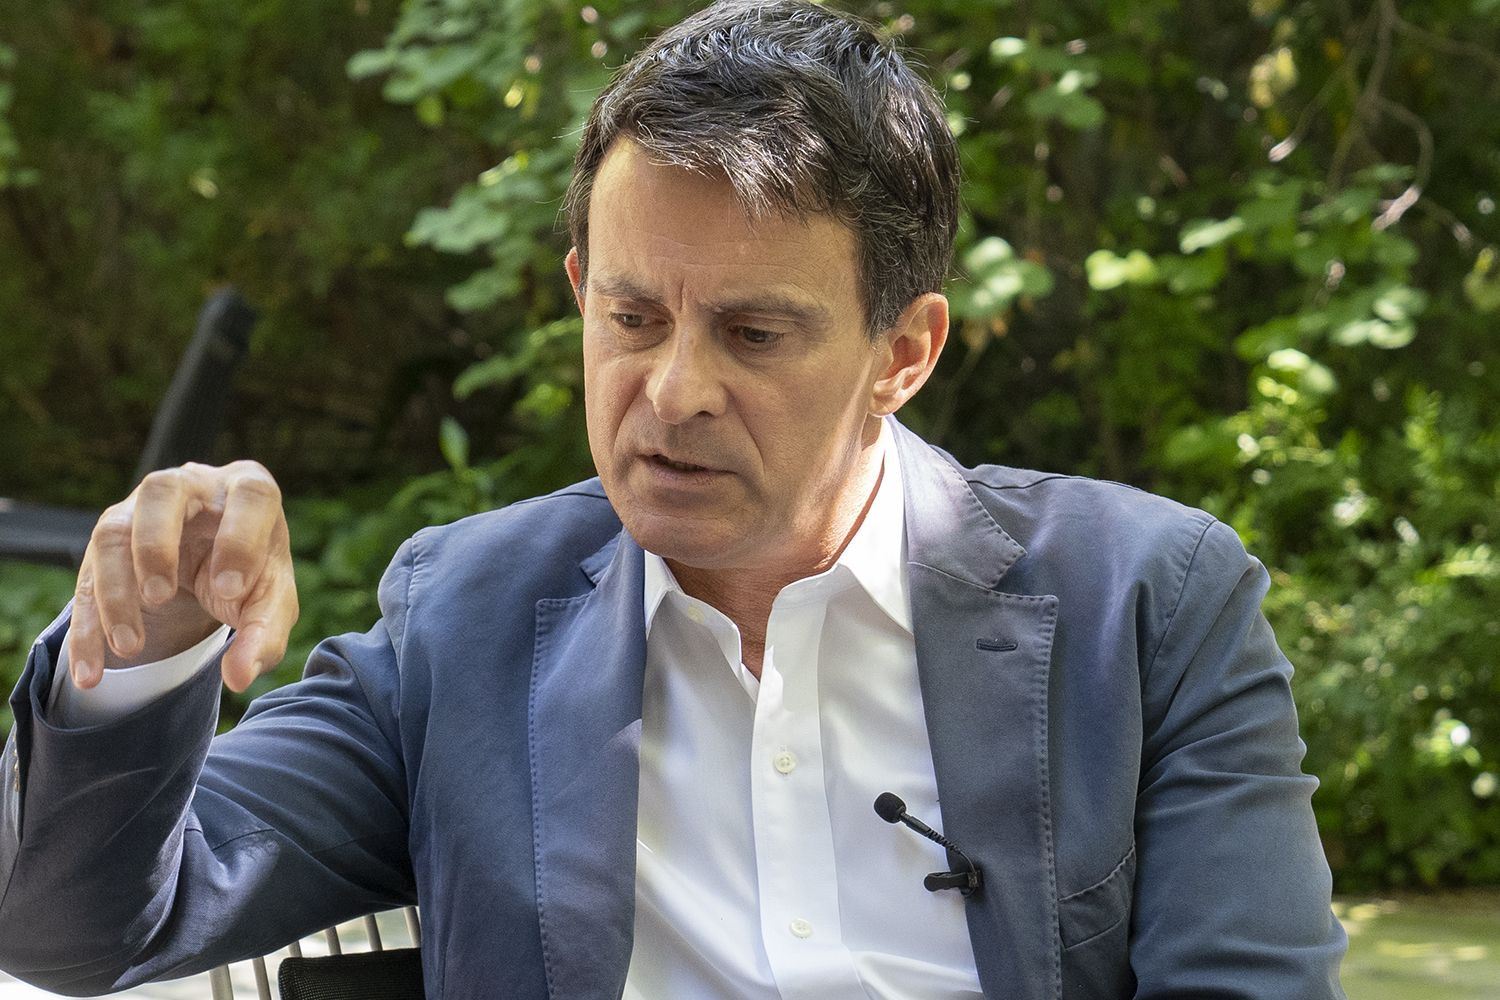 Valls gesticula al analizar los problemas de Barcelona por la crisis del coronavirus durante la entrevista / LENA PRIETO